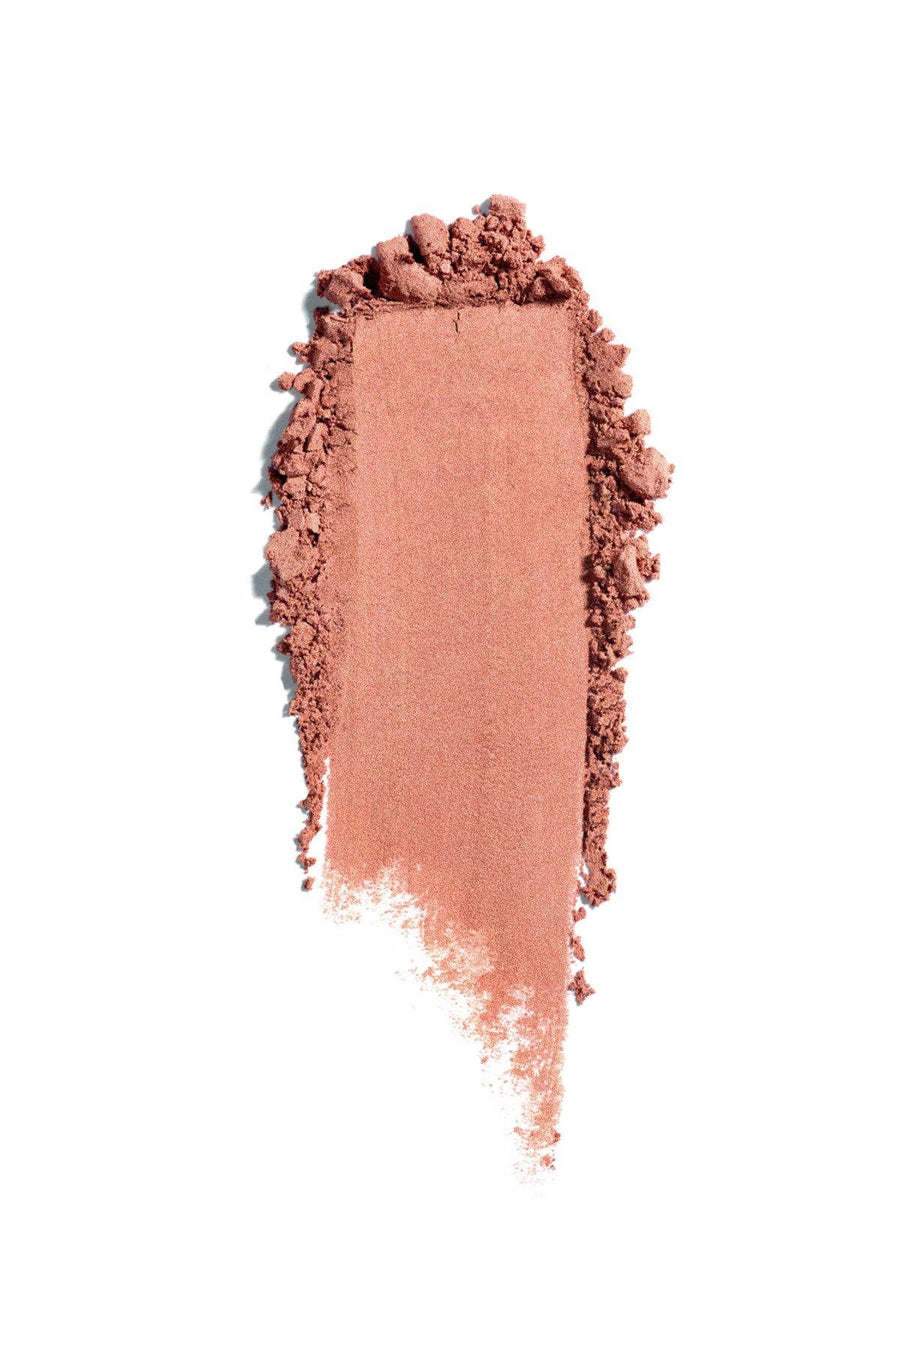 Mineral Blush #3 - Cinnamon - Blend Mineral Cosmetics